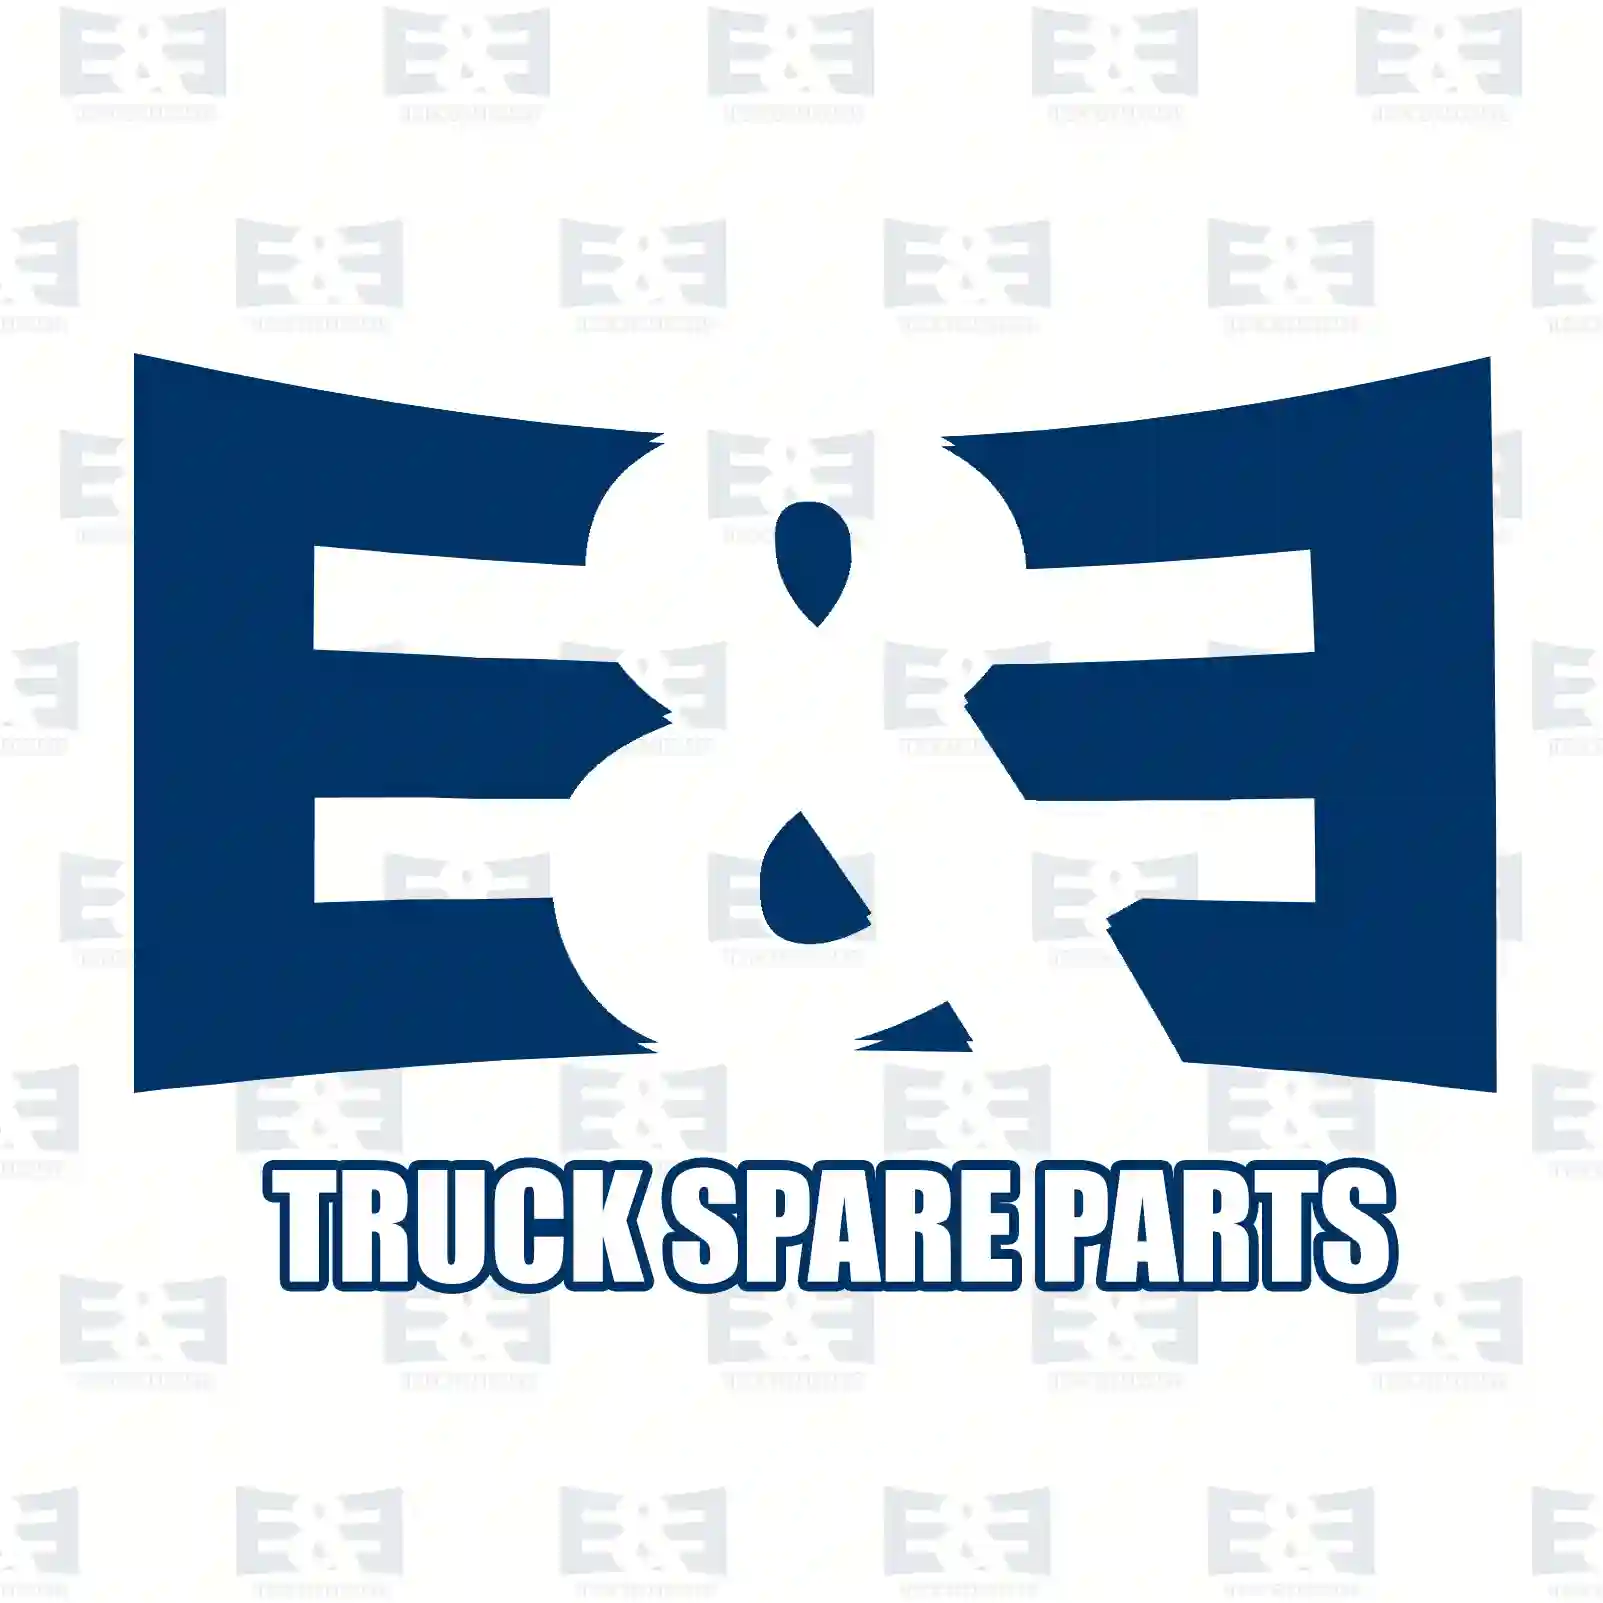  Multiway valve || E&E Truck Spare Parts | Truck Spare Parts, Auotomotive Spare Parts